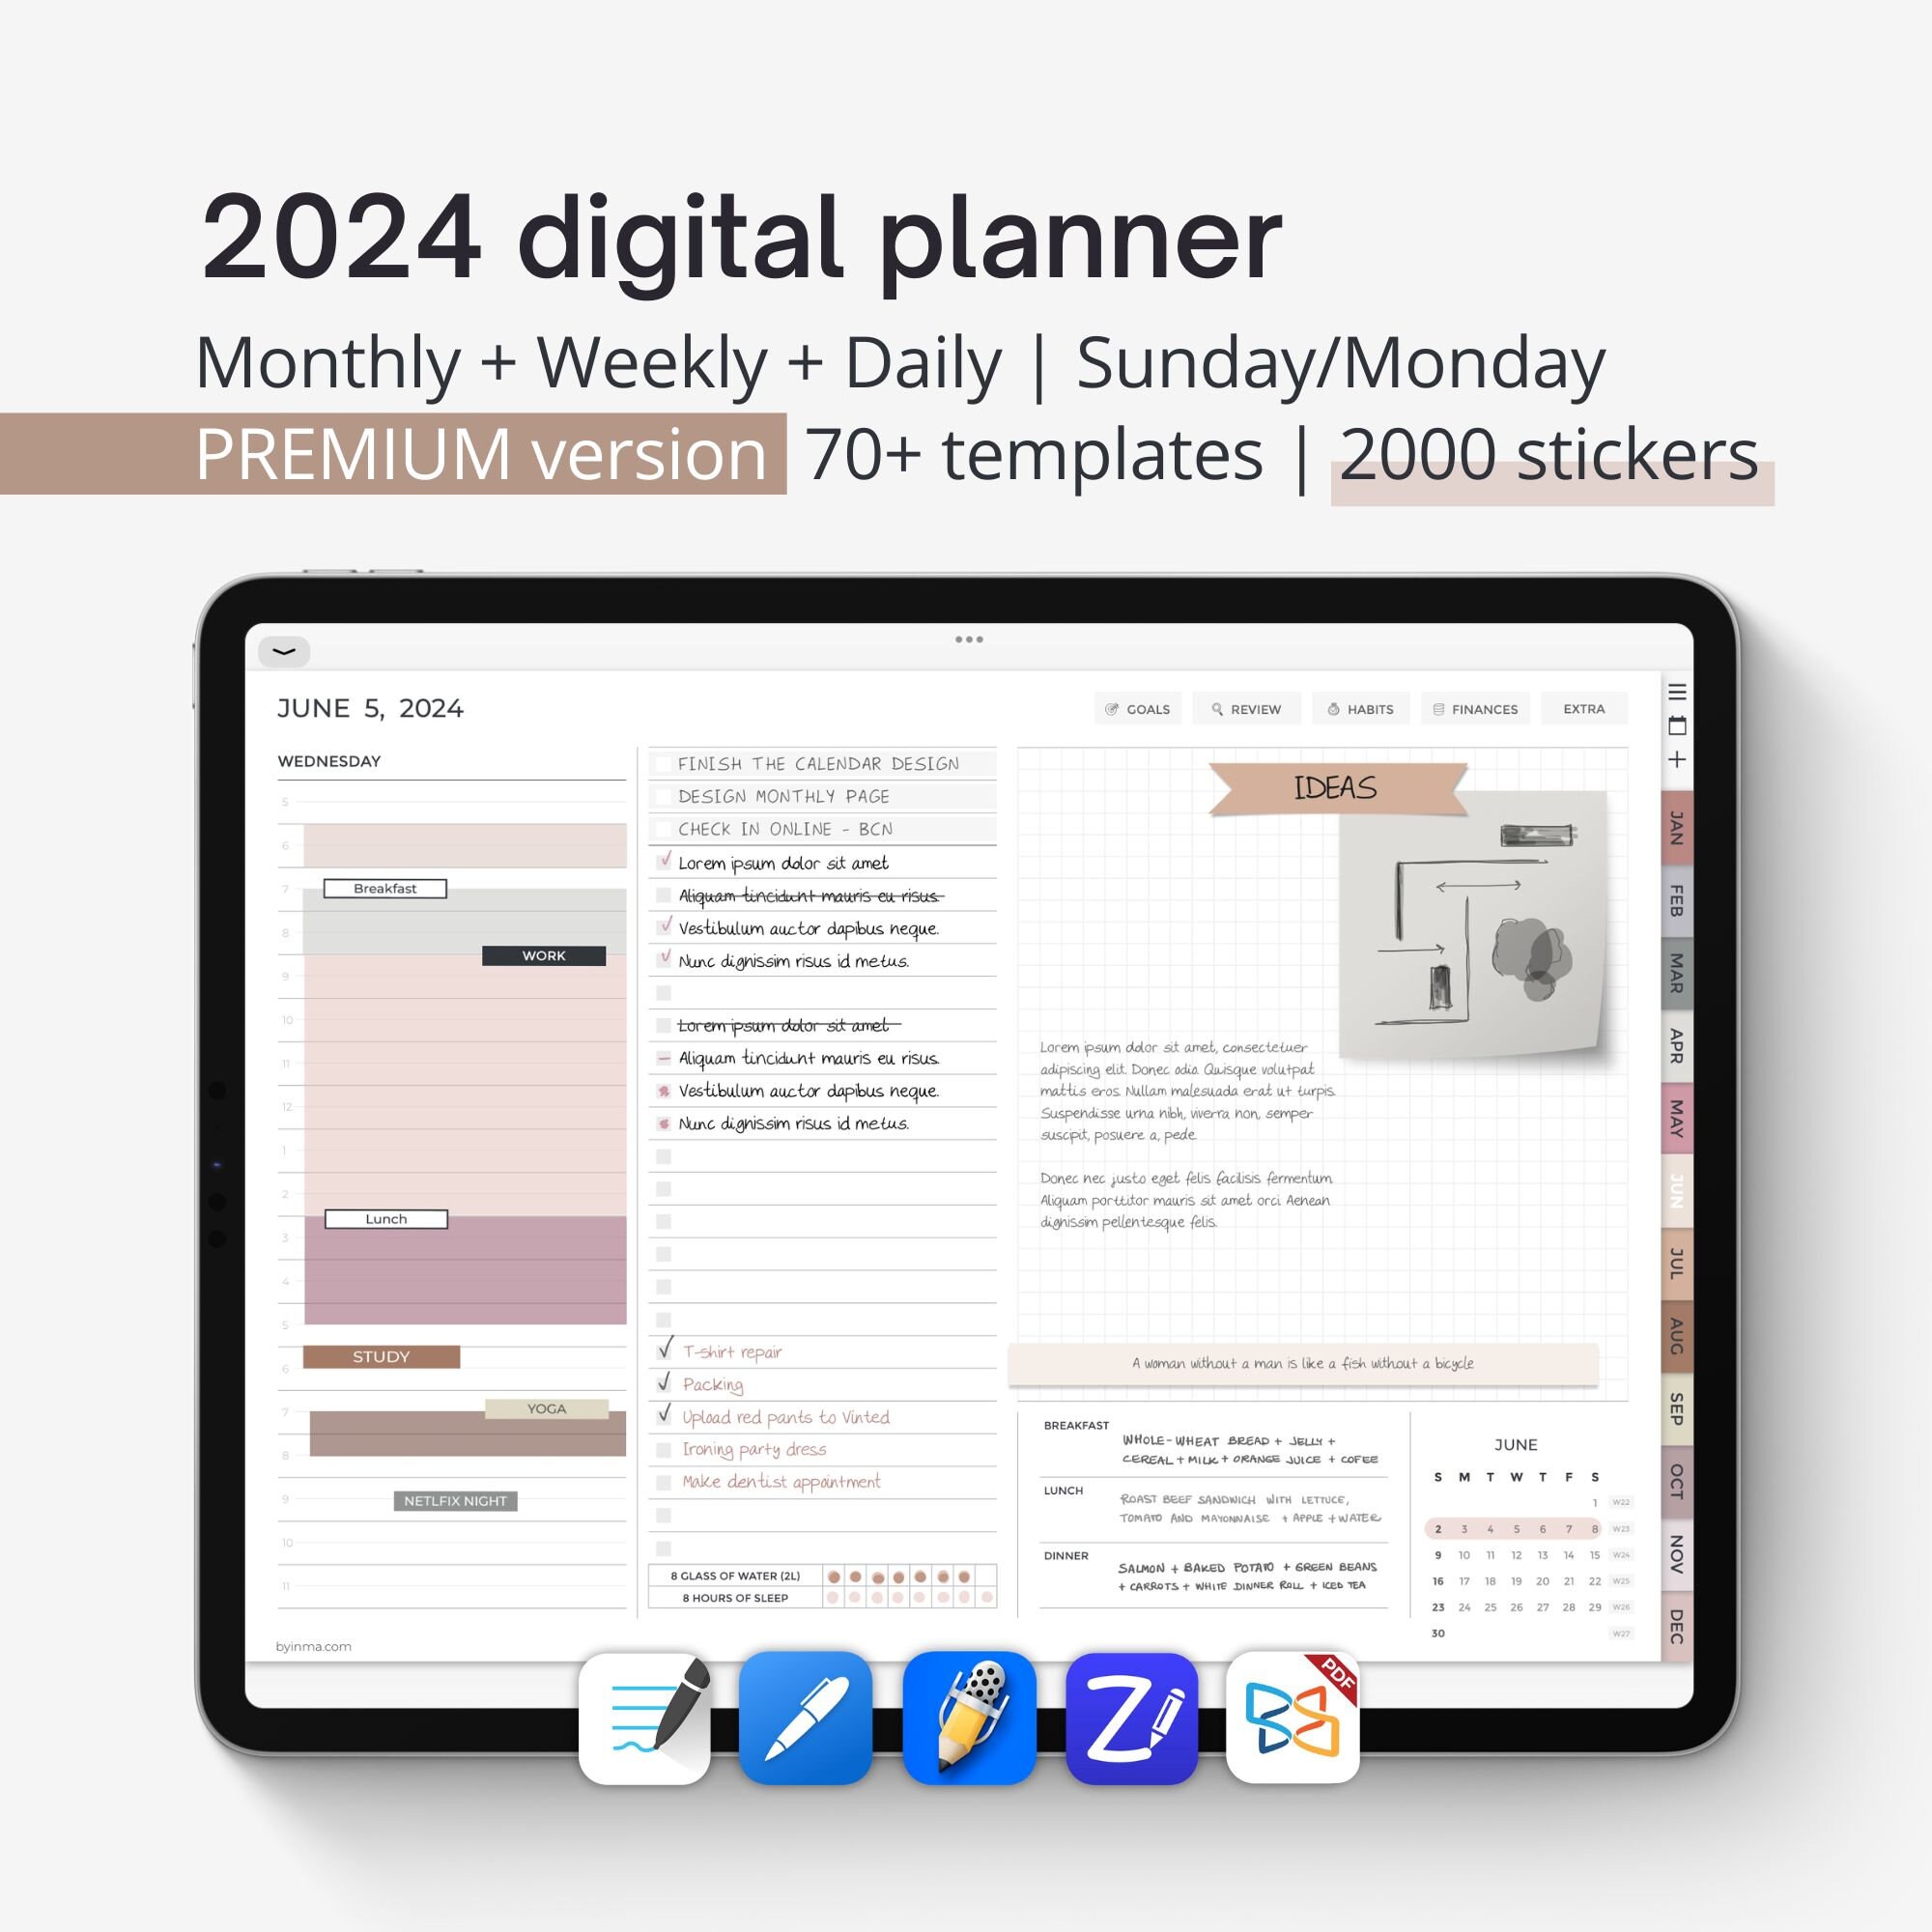 Agenda digital 2024 - Planificador para iPad y tablets - BY INMA – By Inma